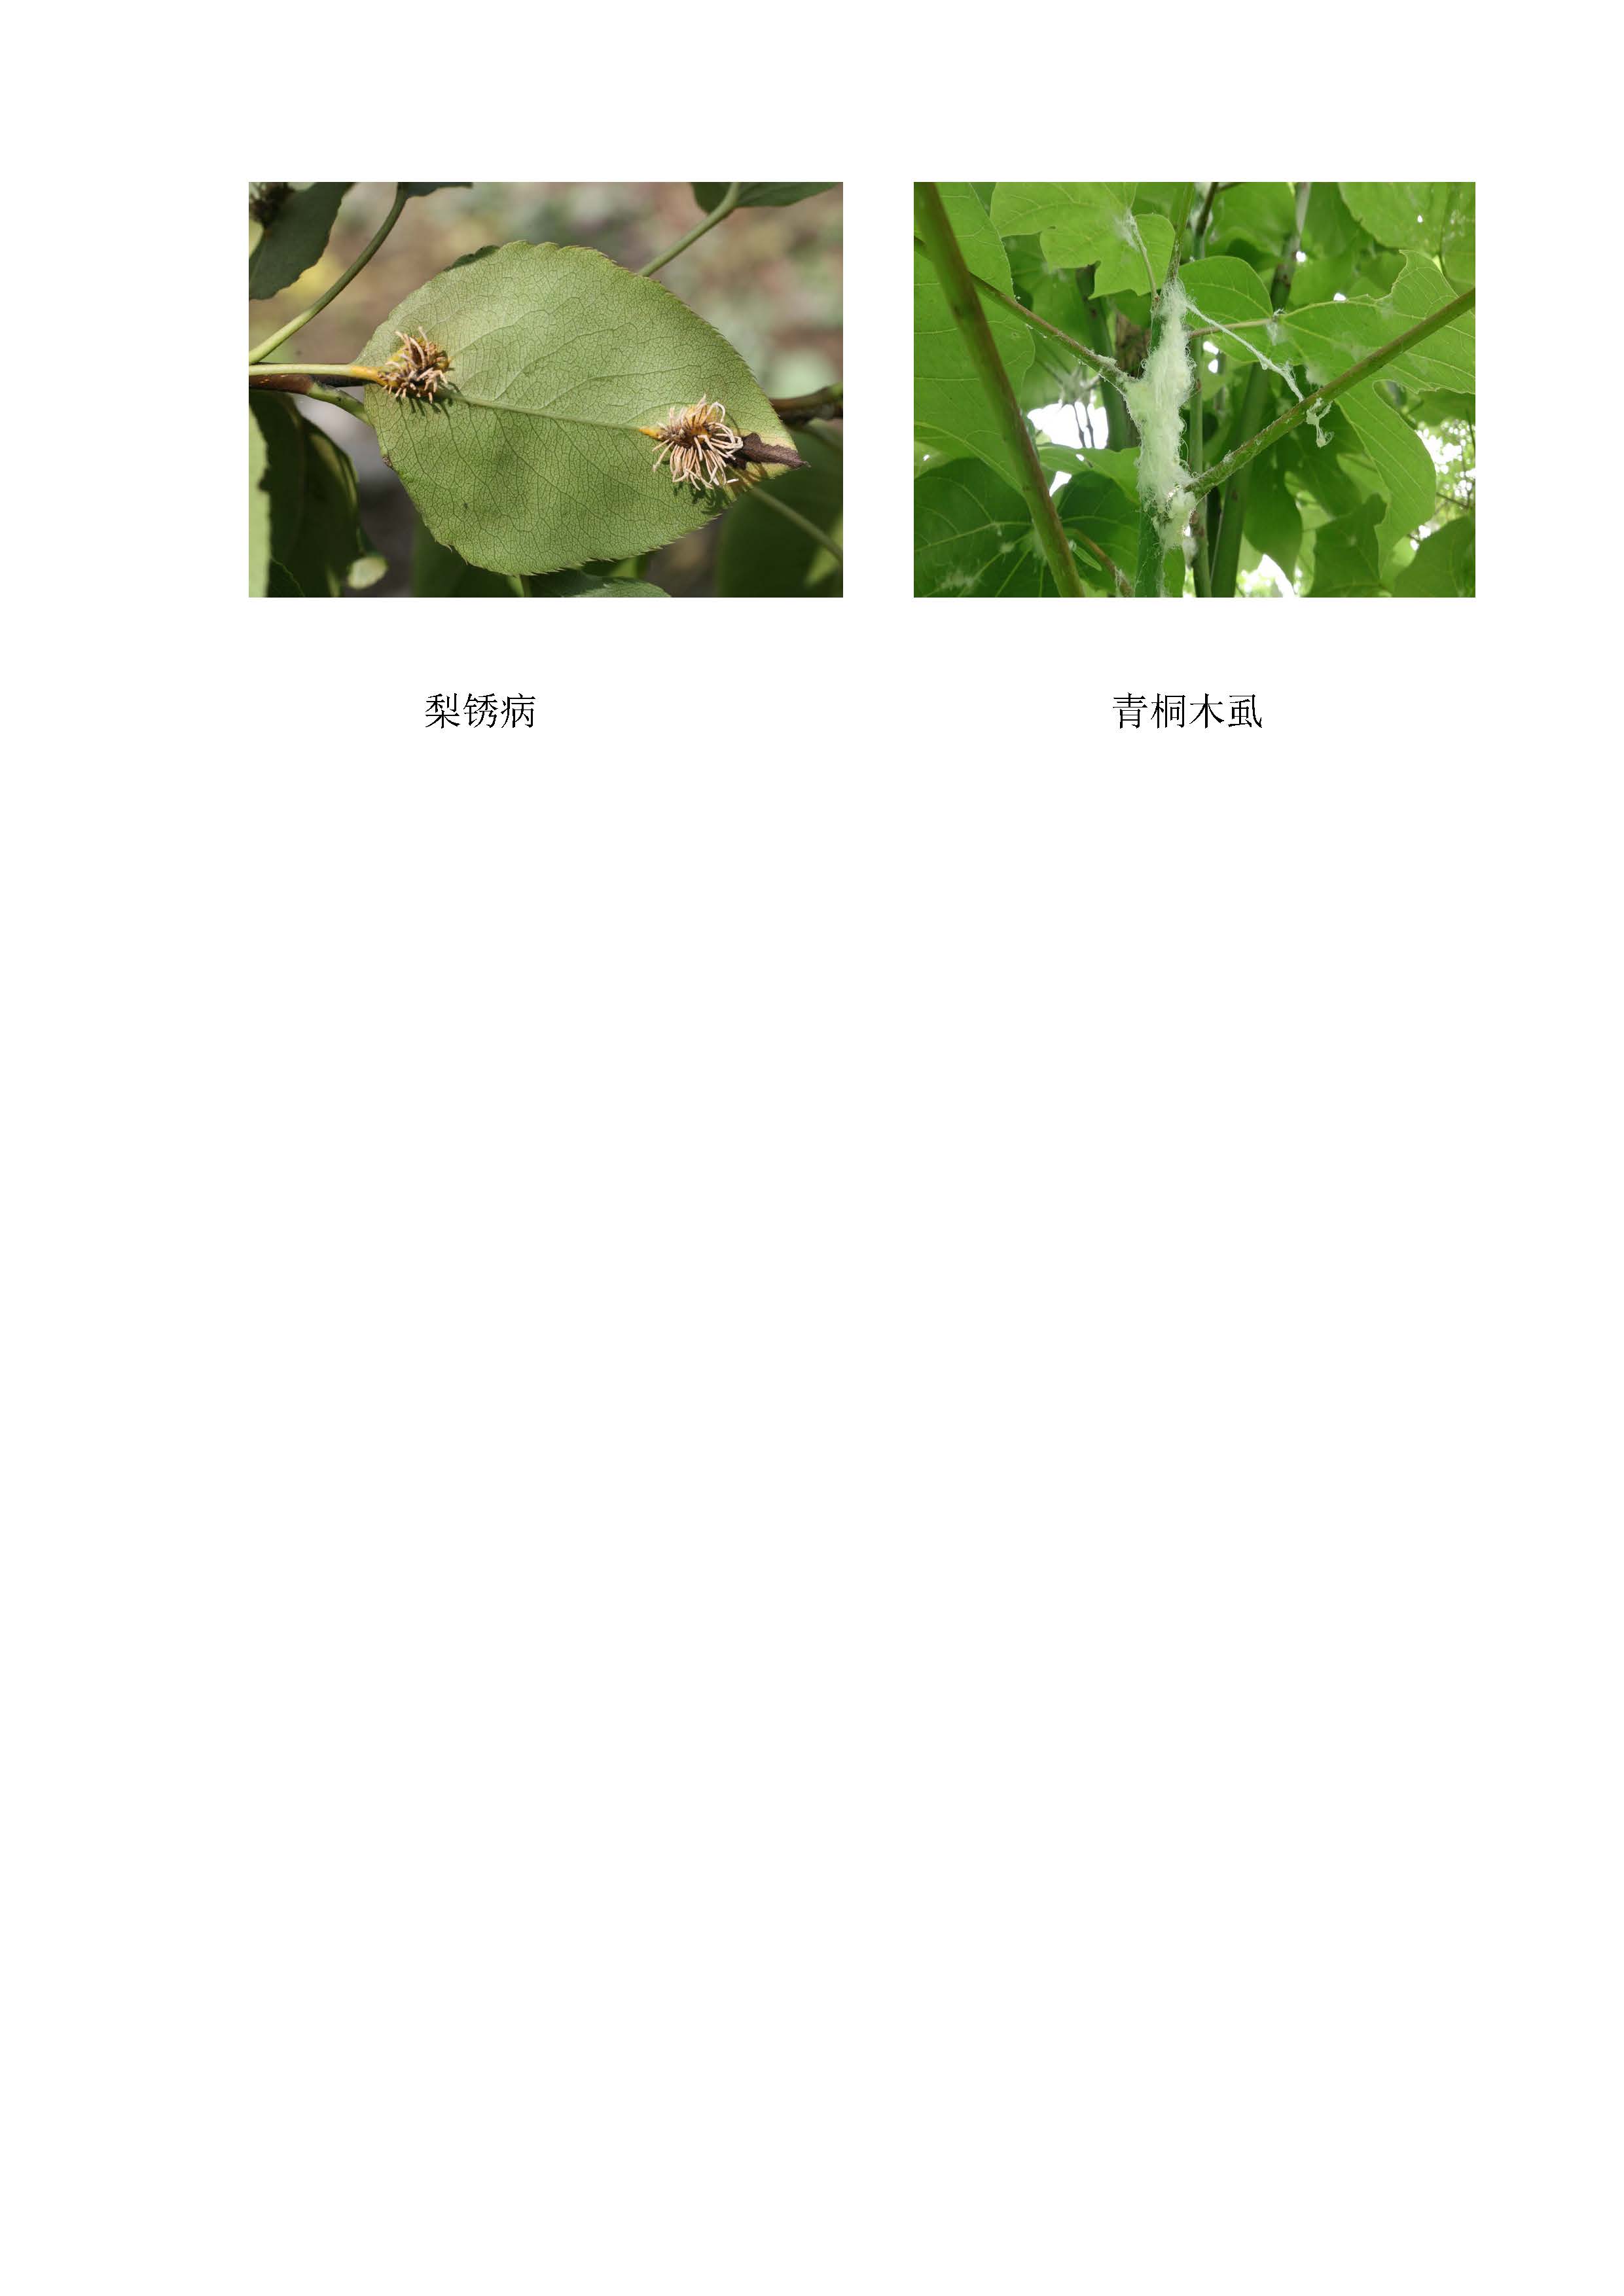 闵行区林业有害生物预警信息191_页面_3.jpg